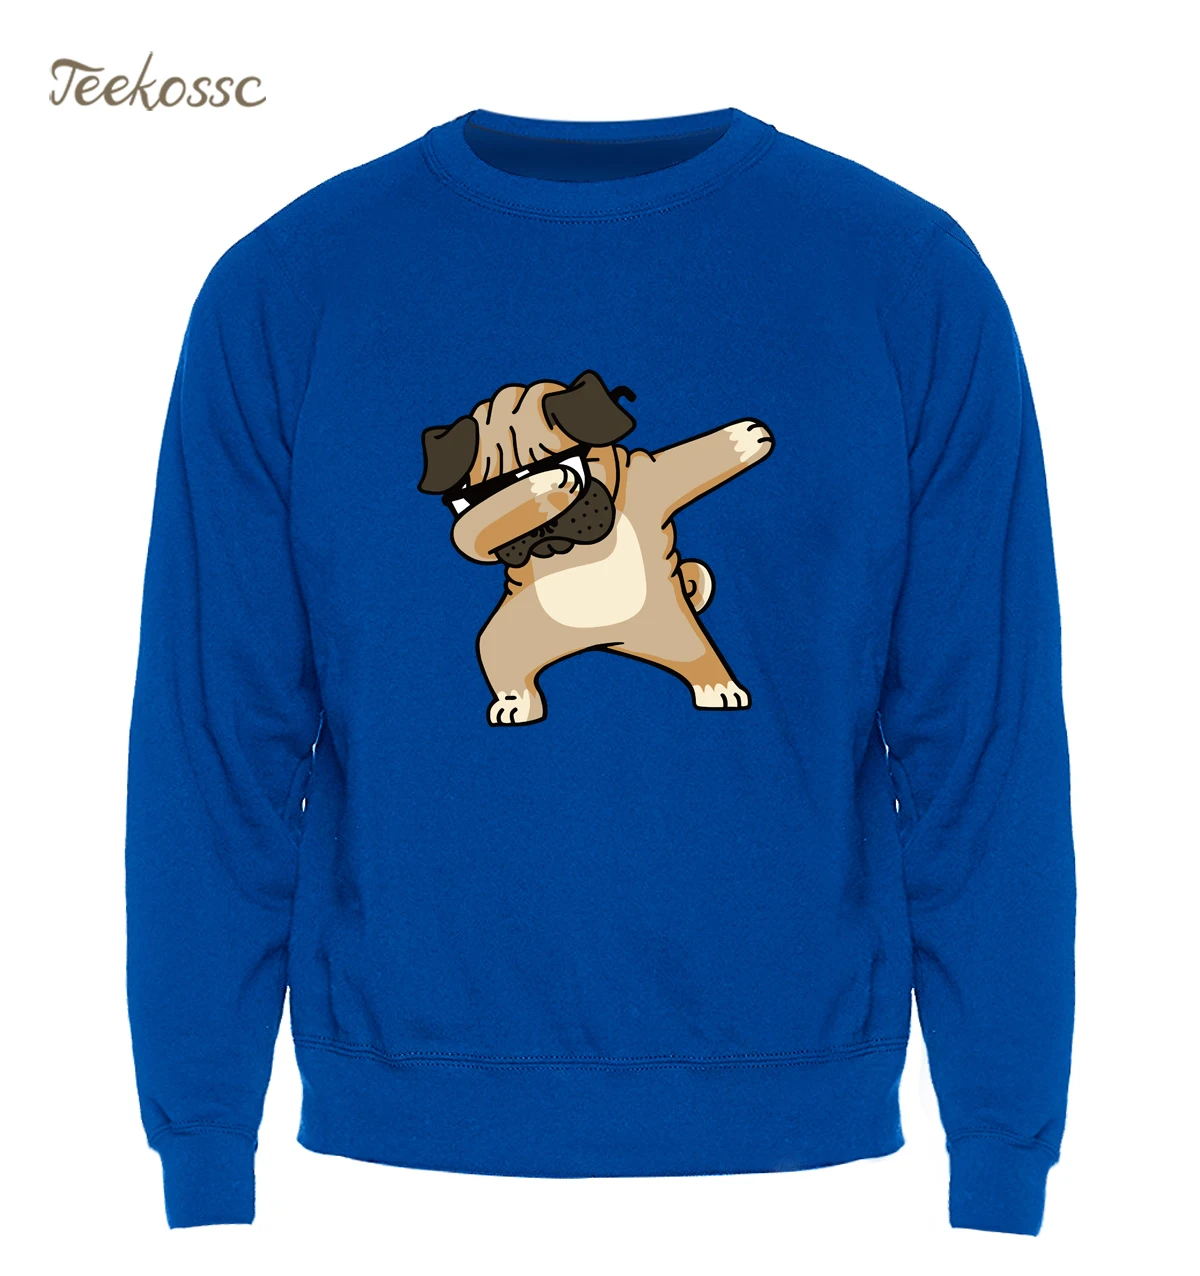 Dabbing Мопс толстовка мужская с принтом забавная Толстовка Kpop хип-хоп свитер с круглым вырезом Зима Осень графика дизайн брендовая одежда